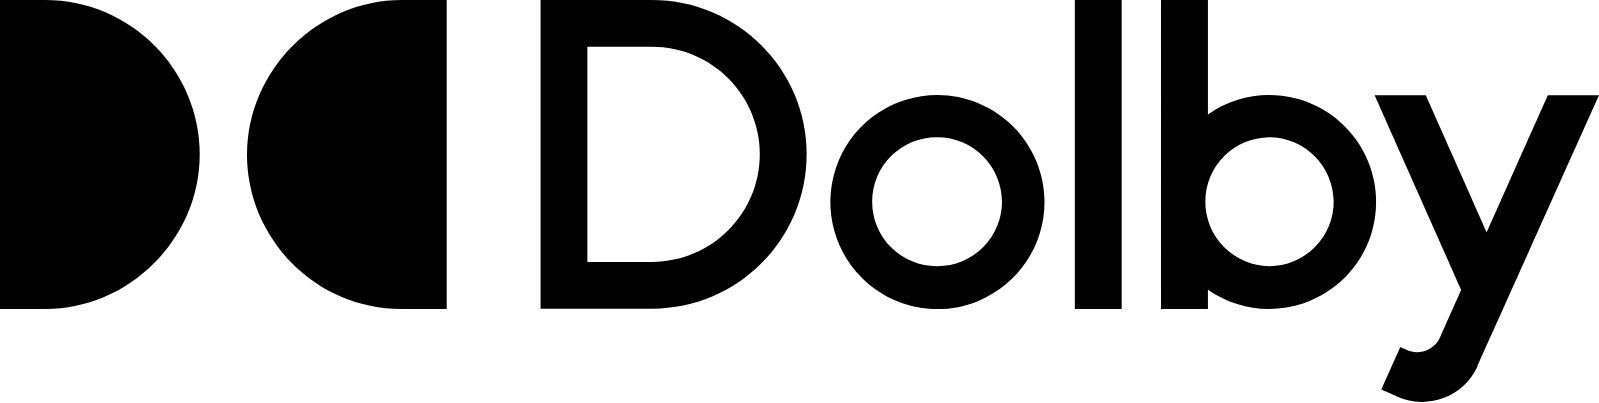 Dolby logo large (transparent PNG)